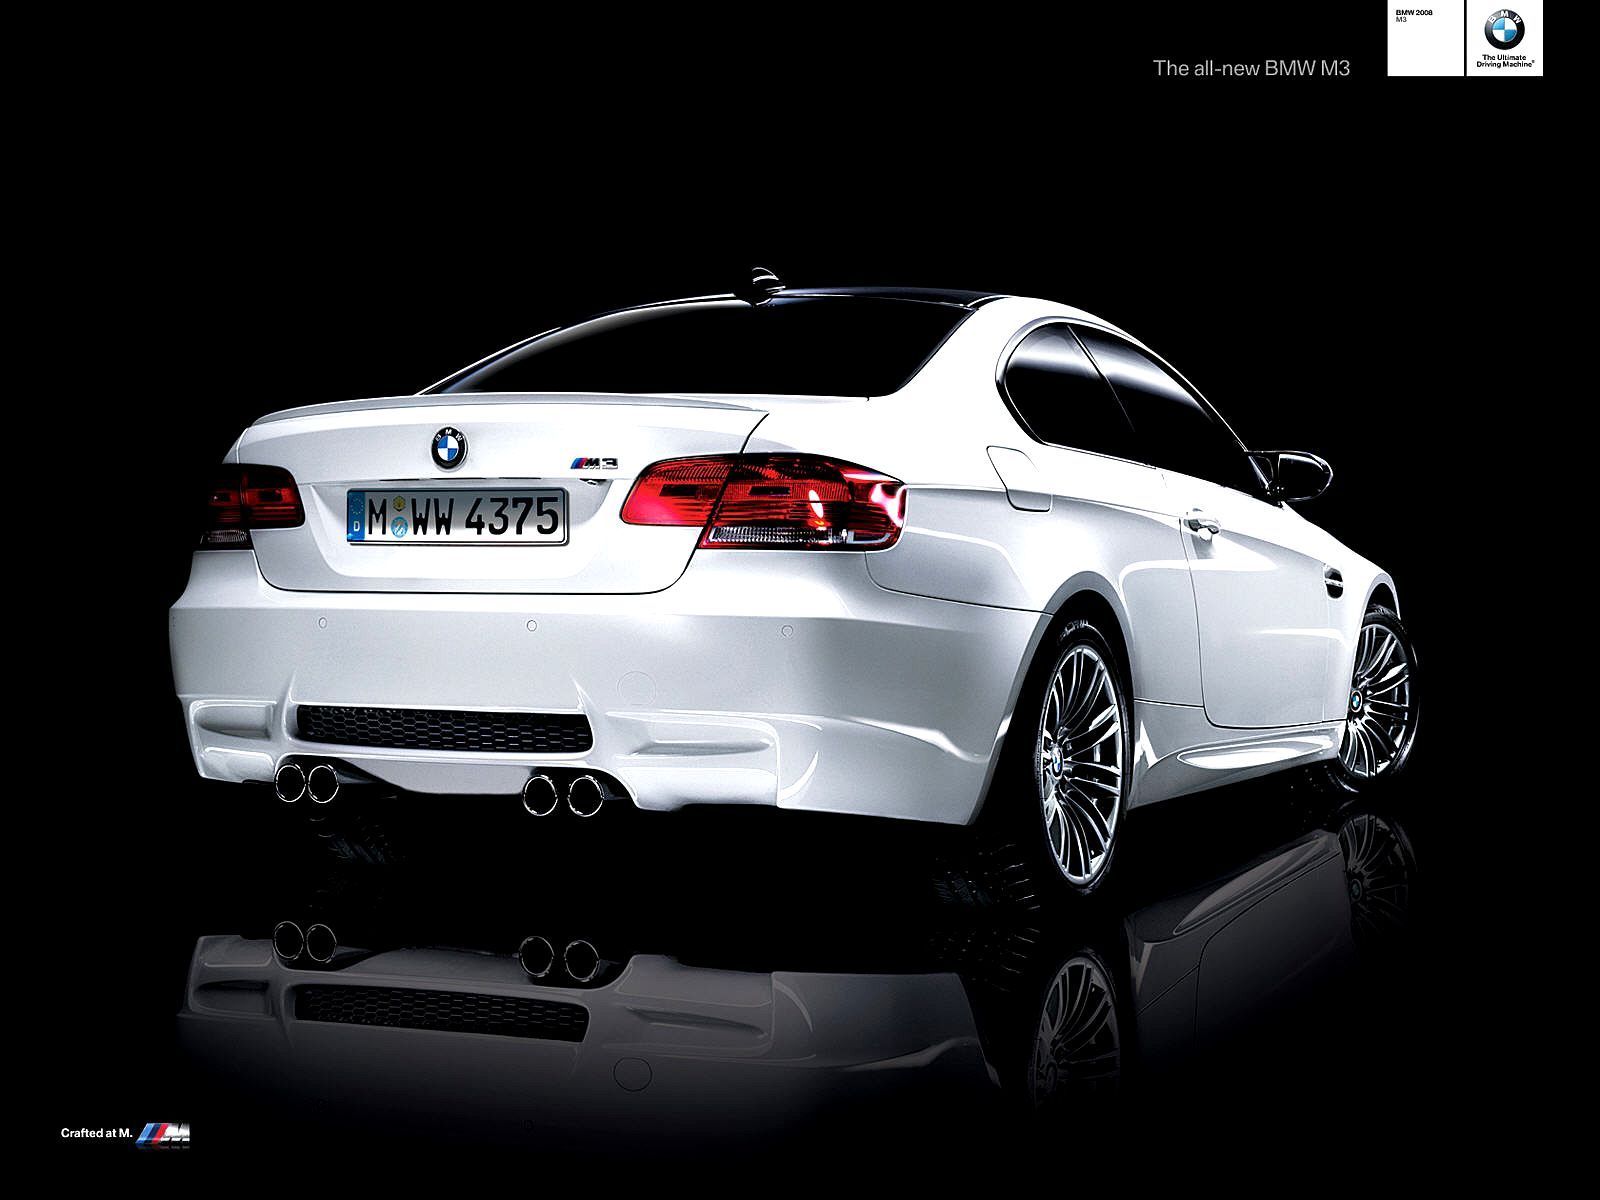 BMW M3 Wallpaper | 1600x1200 | ID:176